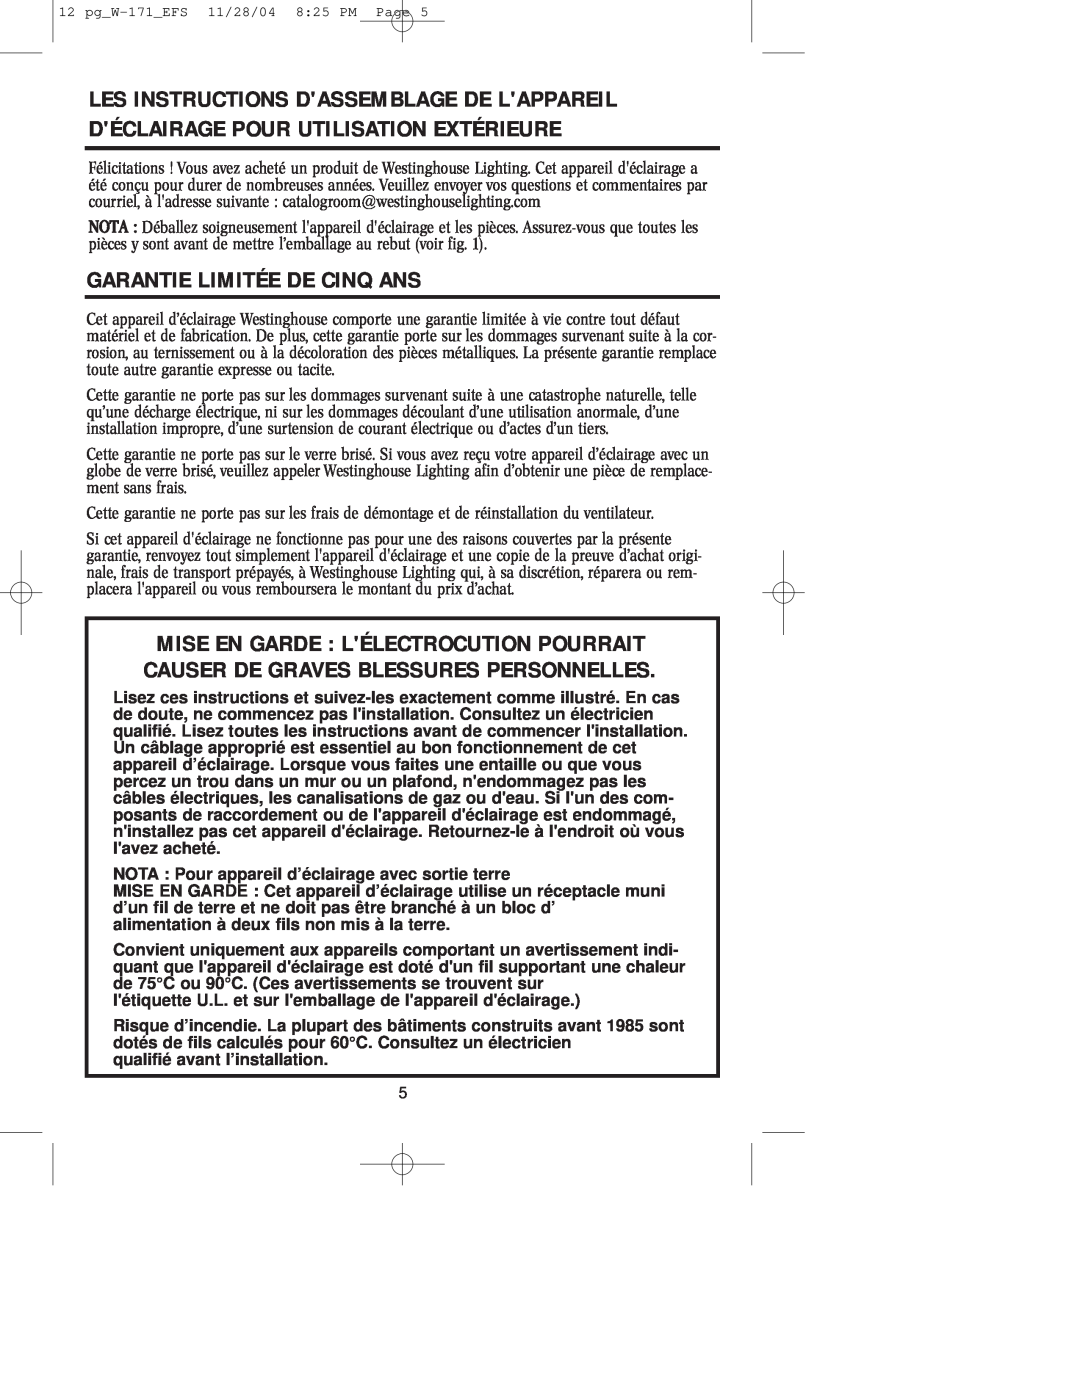 Westinghouse Outdoor Lighting Fixture owner manual Garantie Limitée De Cinq Ans 